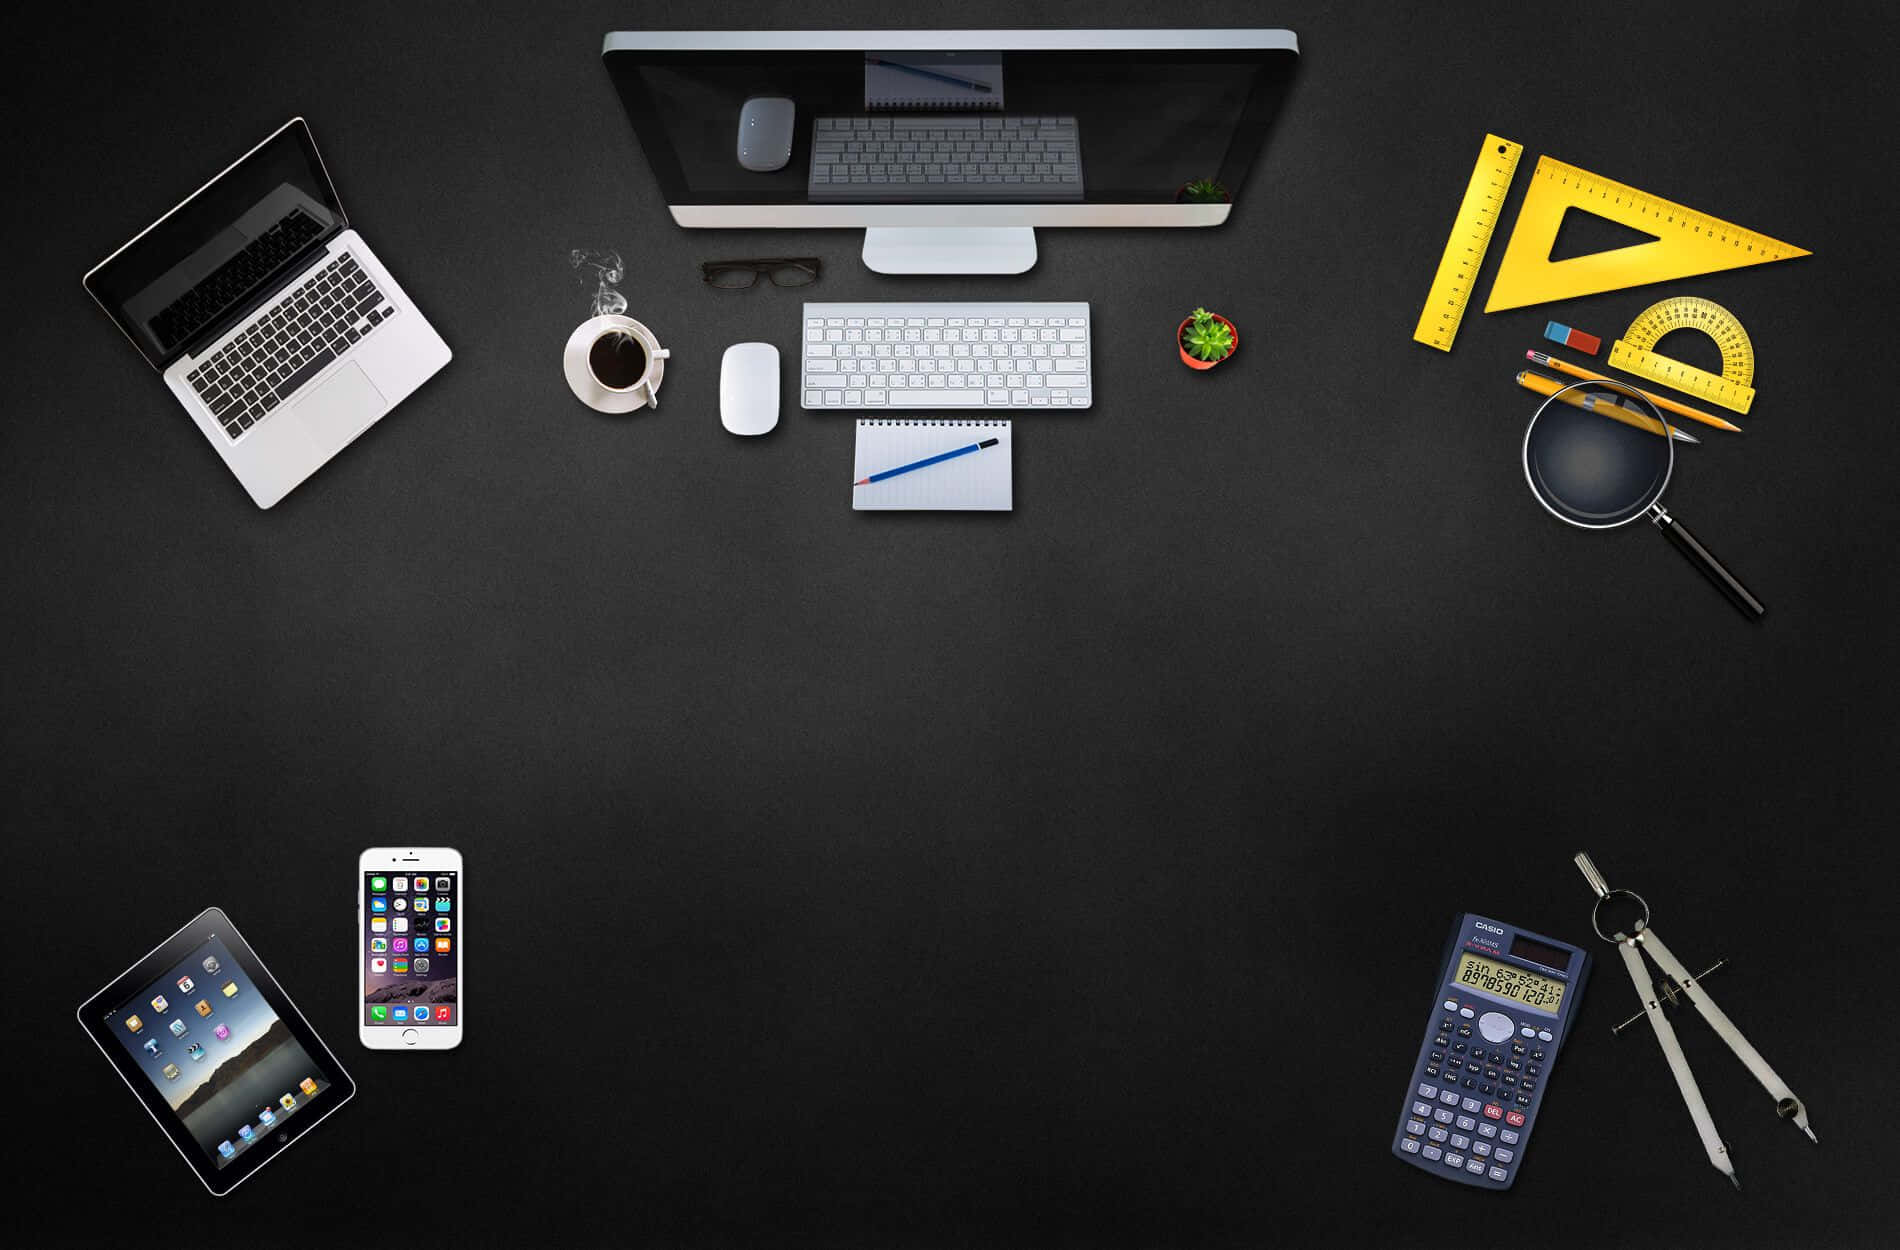 Einschwarzer Schreibtisch Mit Einem Laptop, Tablet Und Anderen Gegenständen.